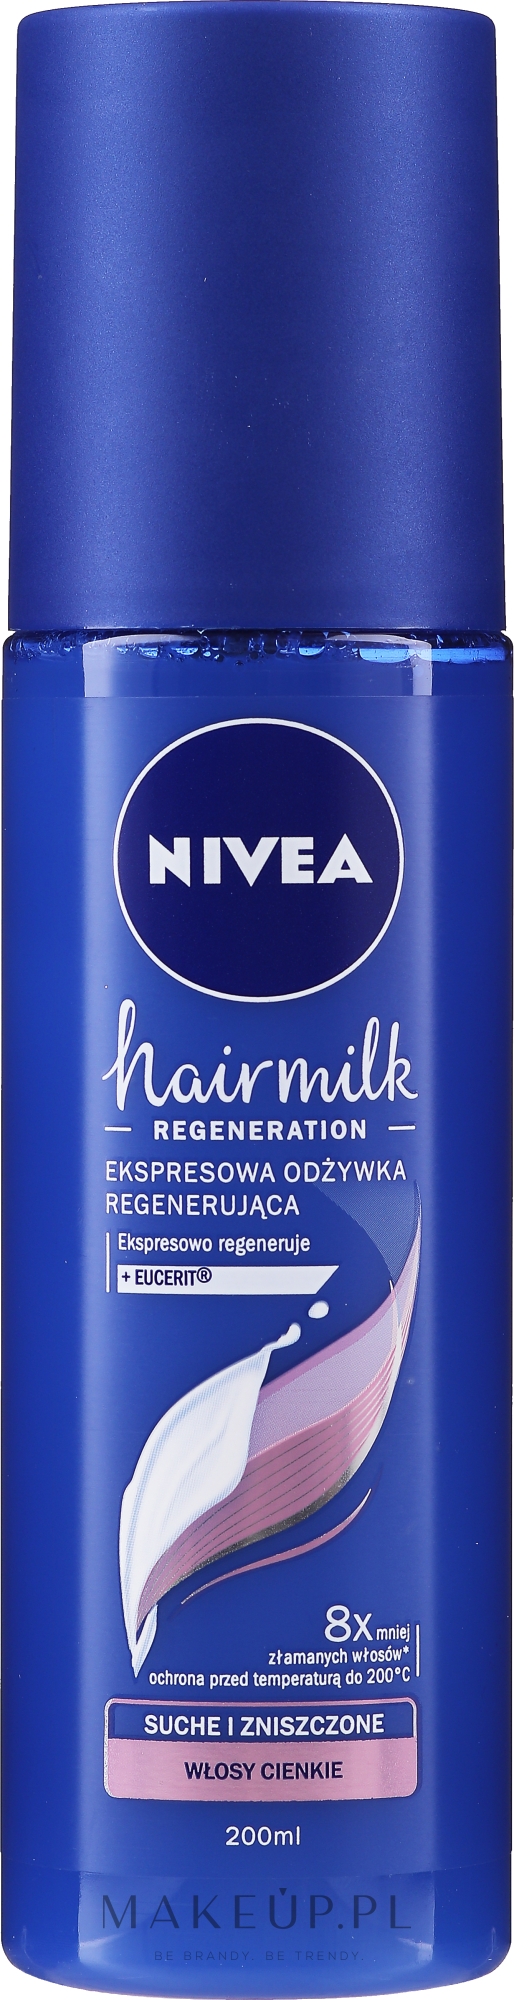 ekspresowa odżywka regenerująca do włosów o cienkiej strukturze hairmilk 200ml